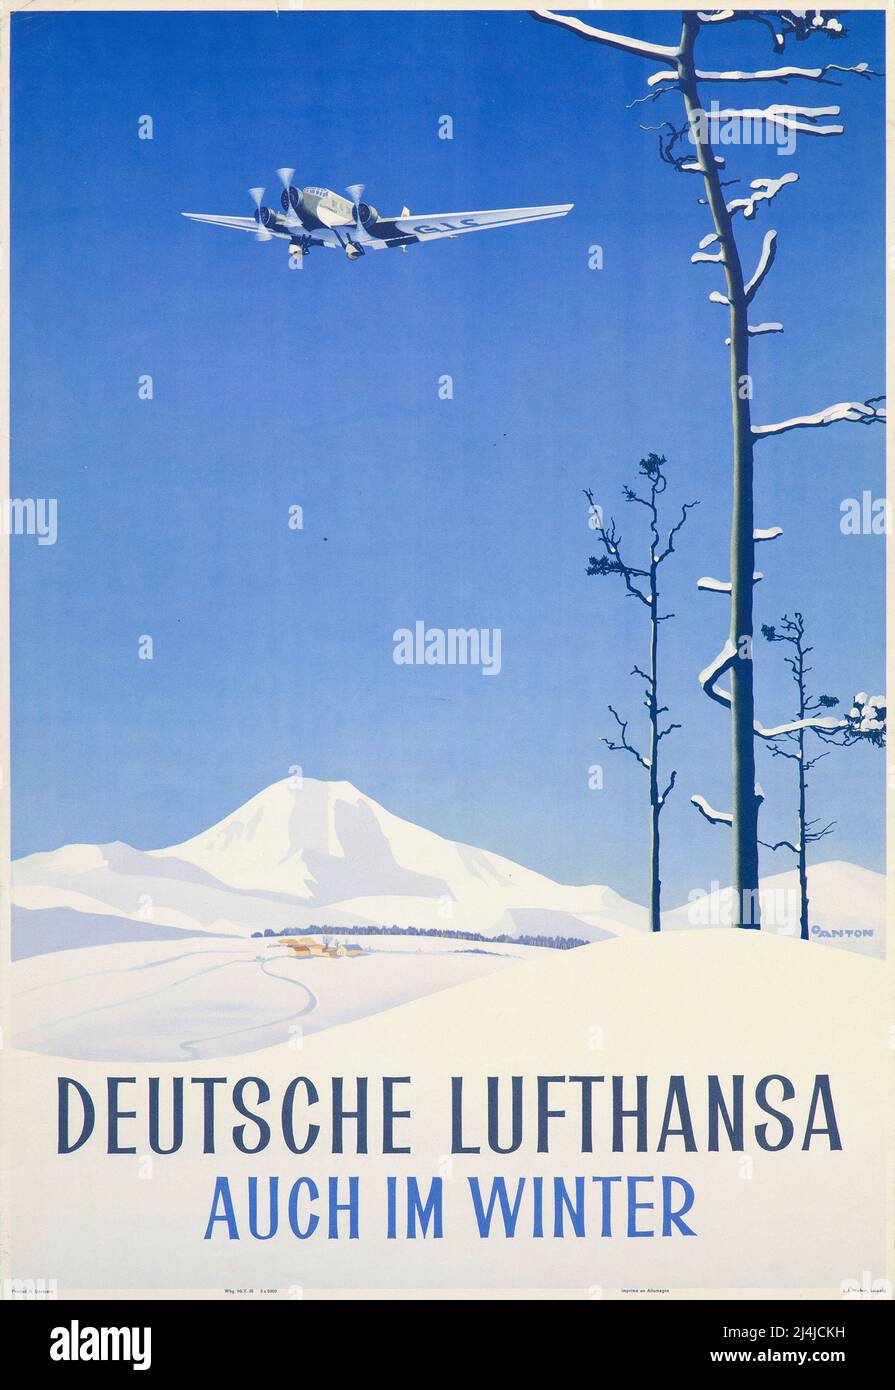 Vintage Travel Poster -auch im Winter (auch im Winter) - Lufthansa German Airlines - c. 1935 Ottomar Anton Stockfoto